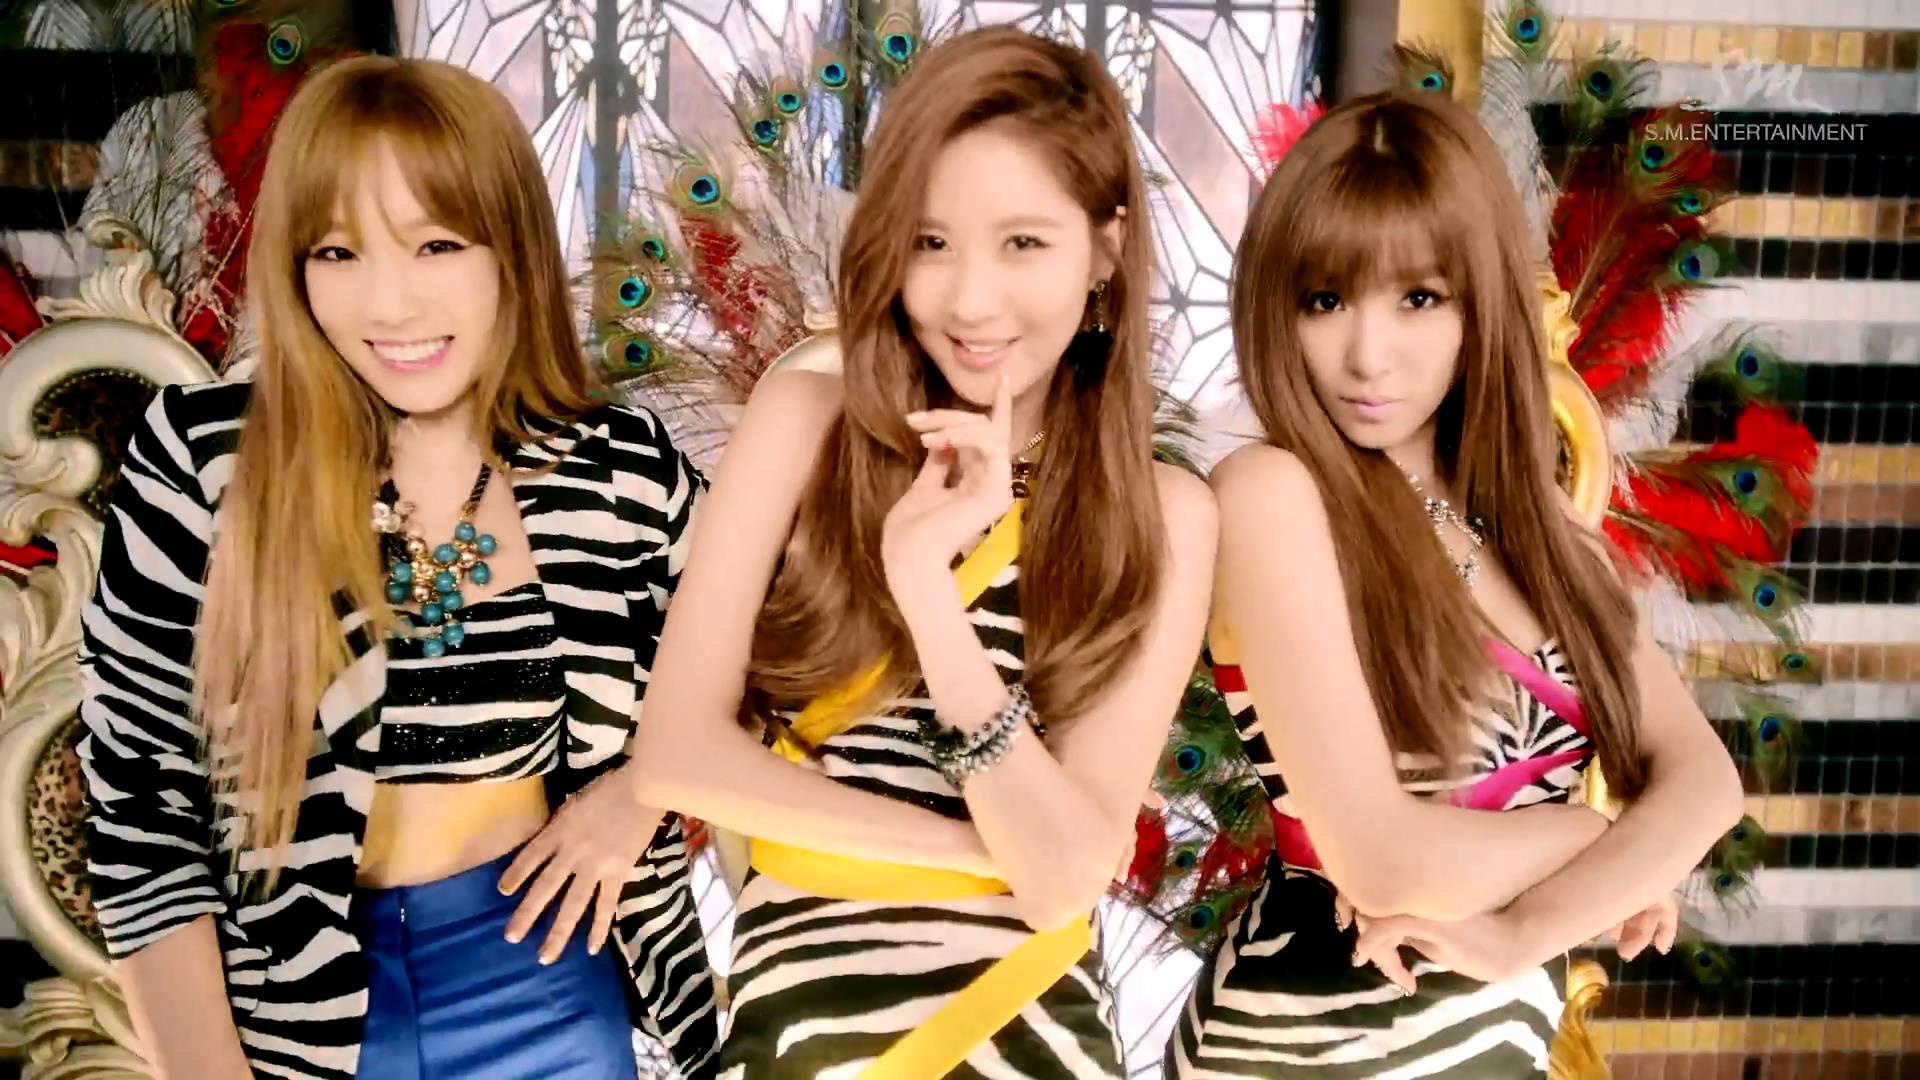 [16-08-2014]Girls' Generation TaeTiSeo phát hành MV cho ca khúc "Holler" Ttsholler2